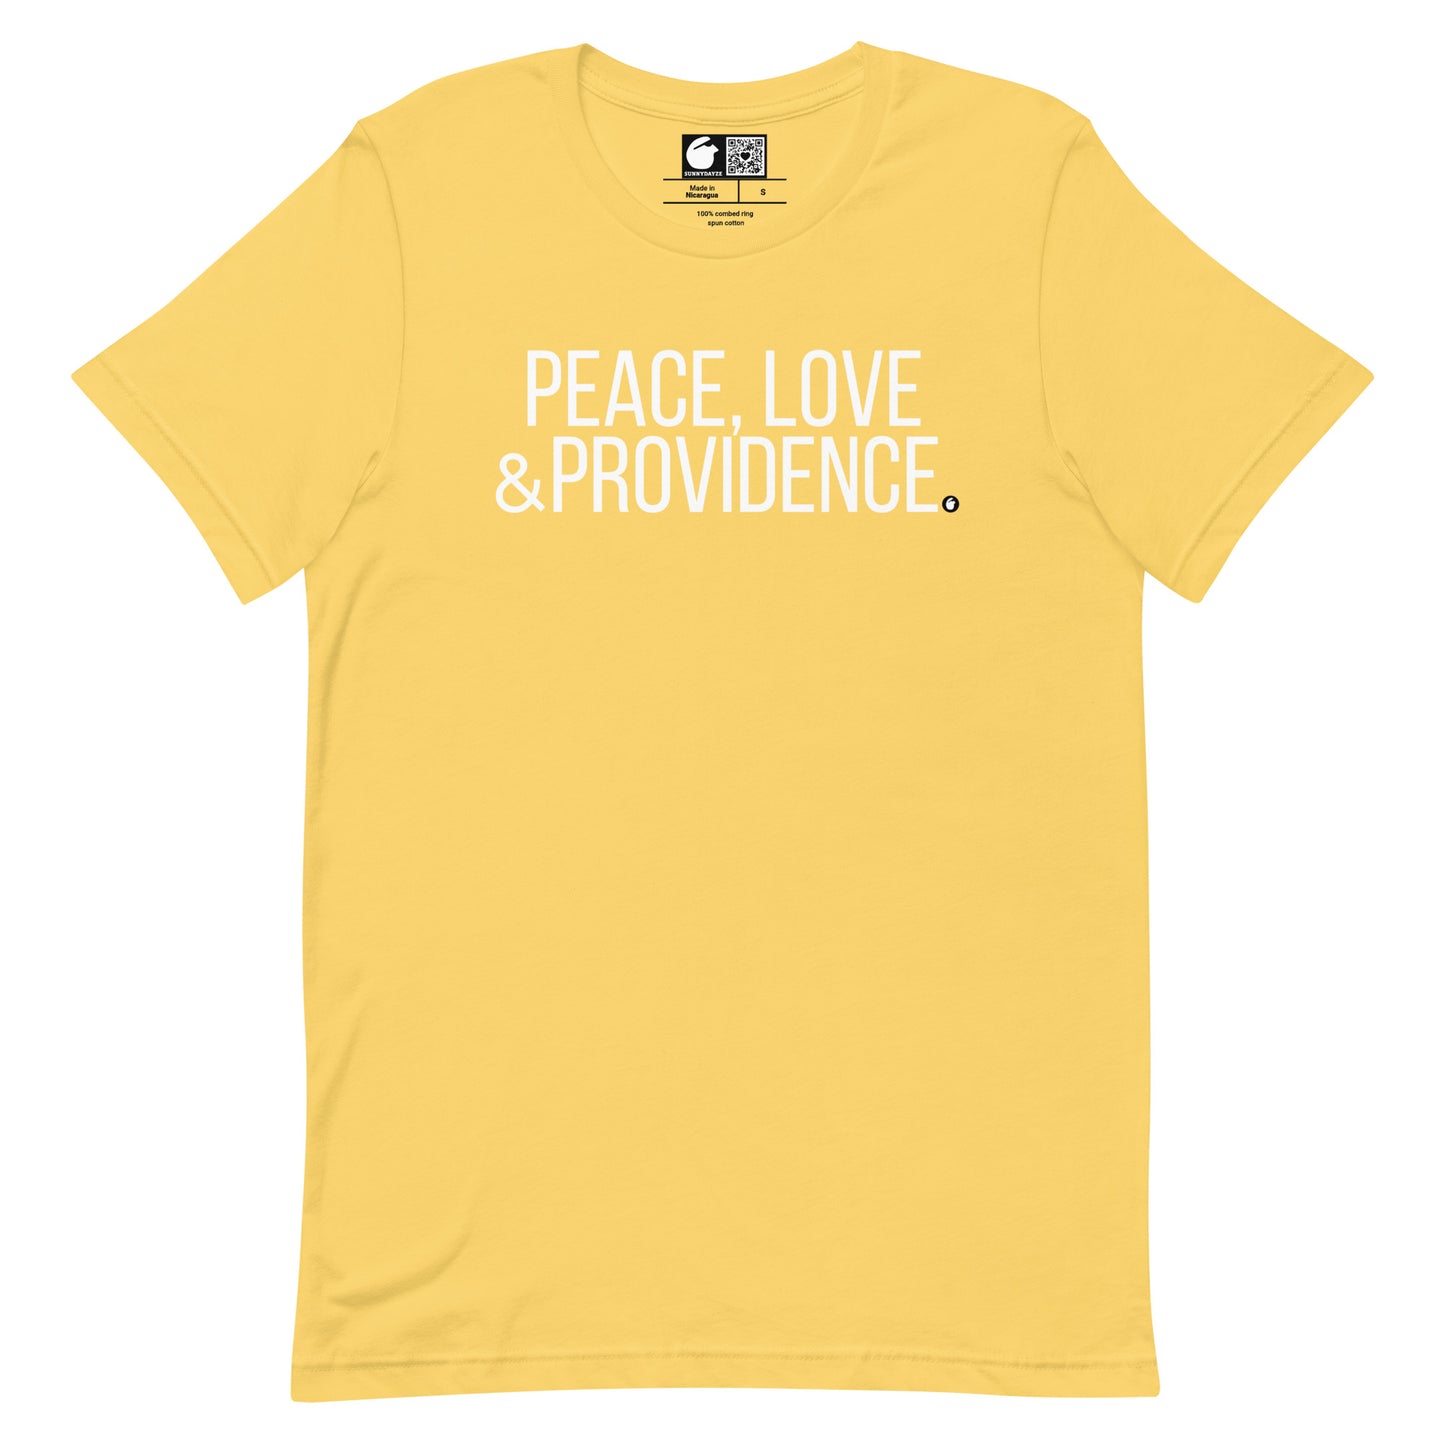 PROVIDENCE Short-Sleeve unisex t-shirt